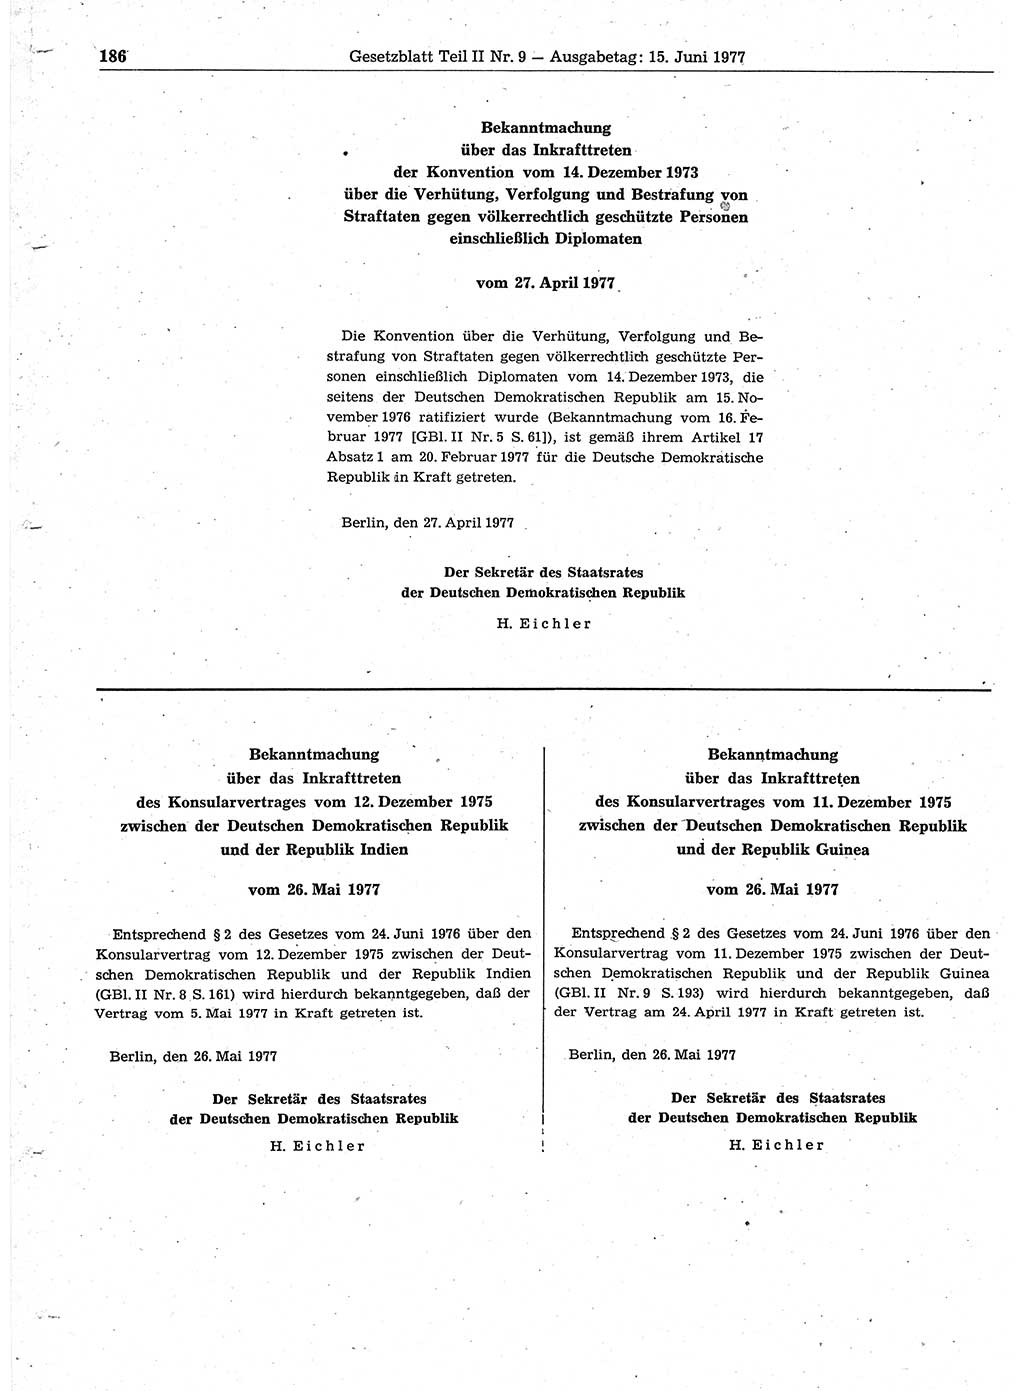 Gesetzblatt (GBl.) der Deutschen Demokratischen Republik (DDR) Teil ⅠⅠ 1977, Seite 186 (GBl. DDR ⅠⅠ 1977, S. 186)